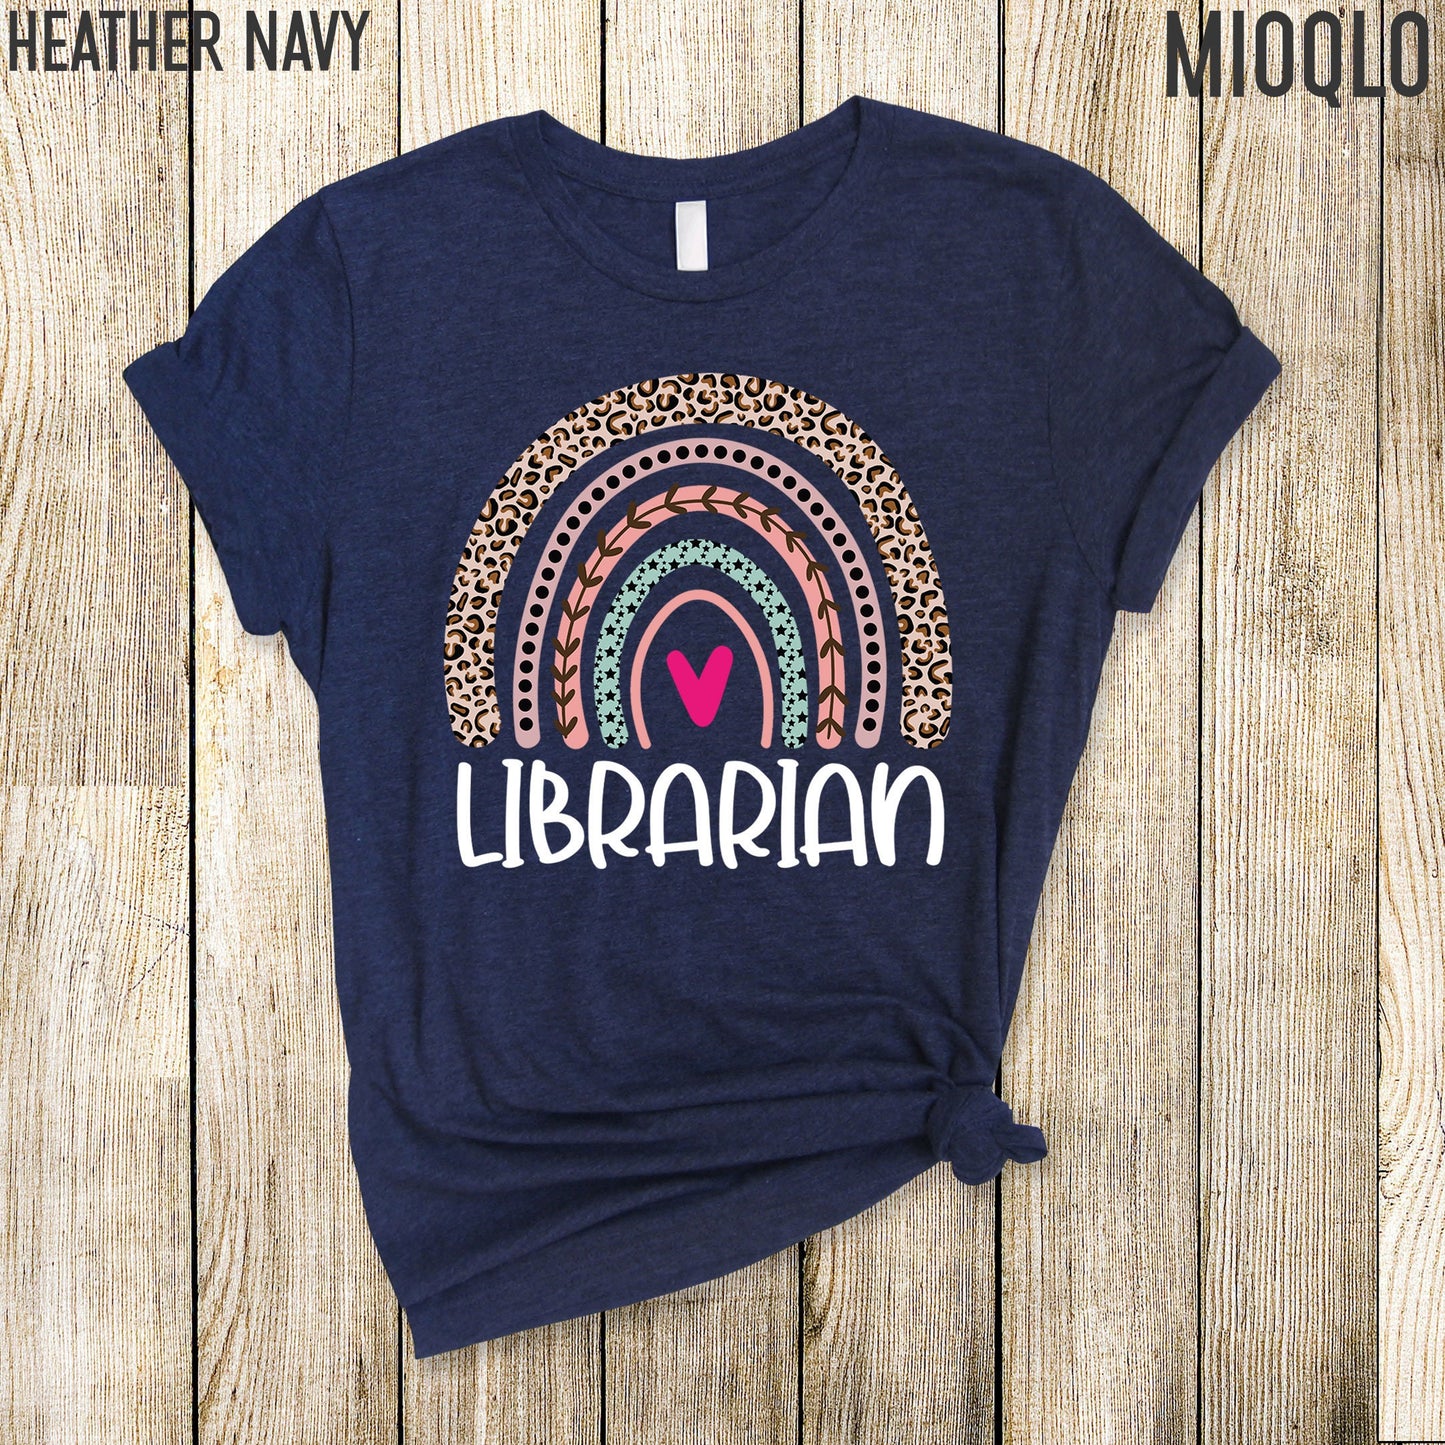 School Librarian Shirt, Reading Teacher Shirt, Literacy Coach Shirt, School Library Squad, Library Shirt, Librarian Gift, New Librarian Tee